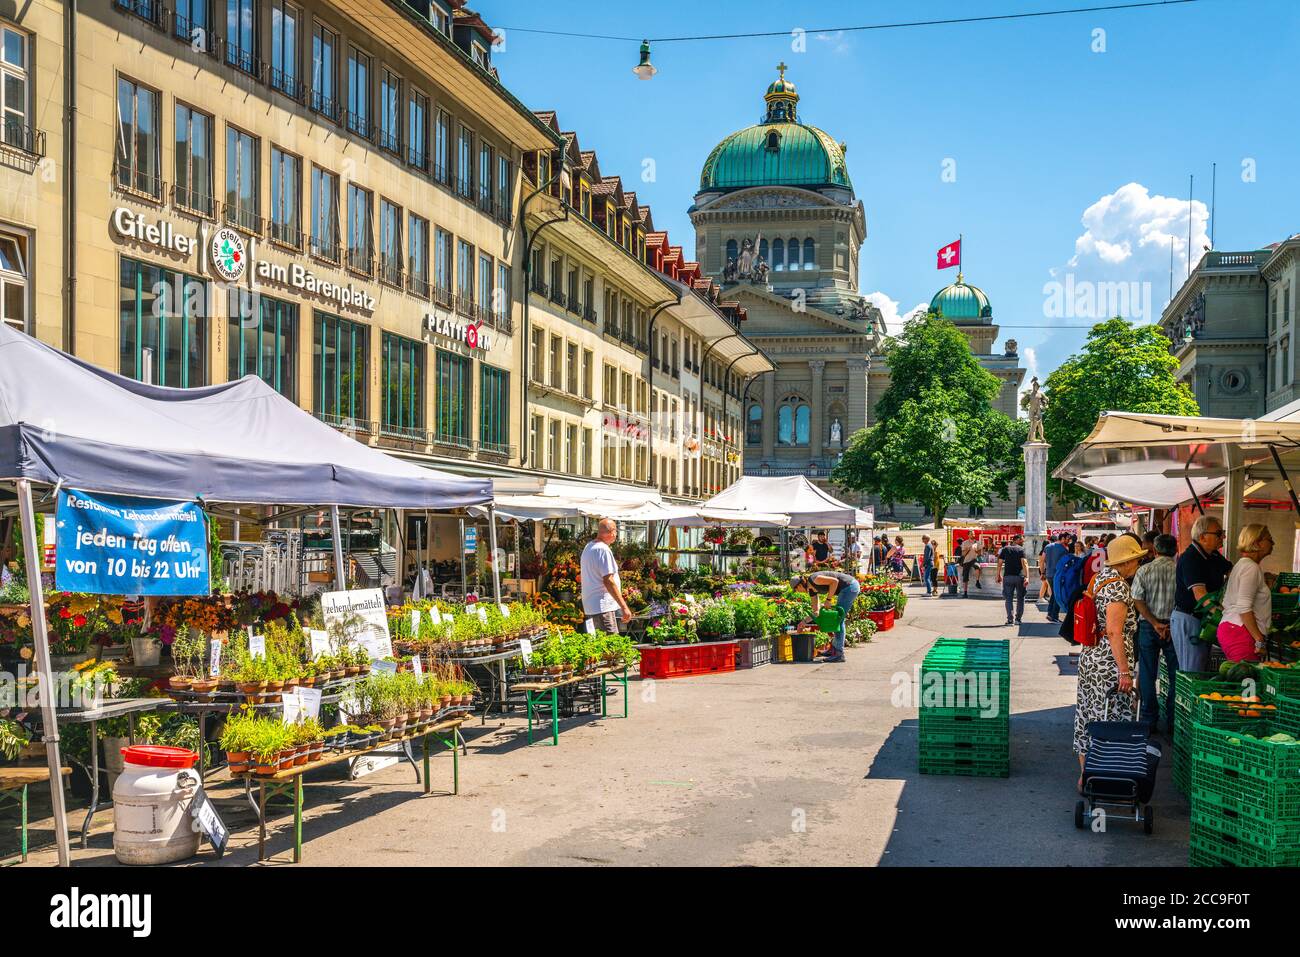 Berna Svizzera , 27 giugno 2020 : popolazione al mercato agricolo in piazza Barenplatz e edificio federale Bundeshaus in background nel centro storico di Berna Svizzerl Foto Stock